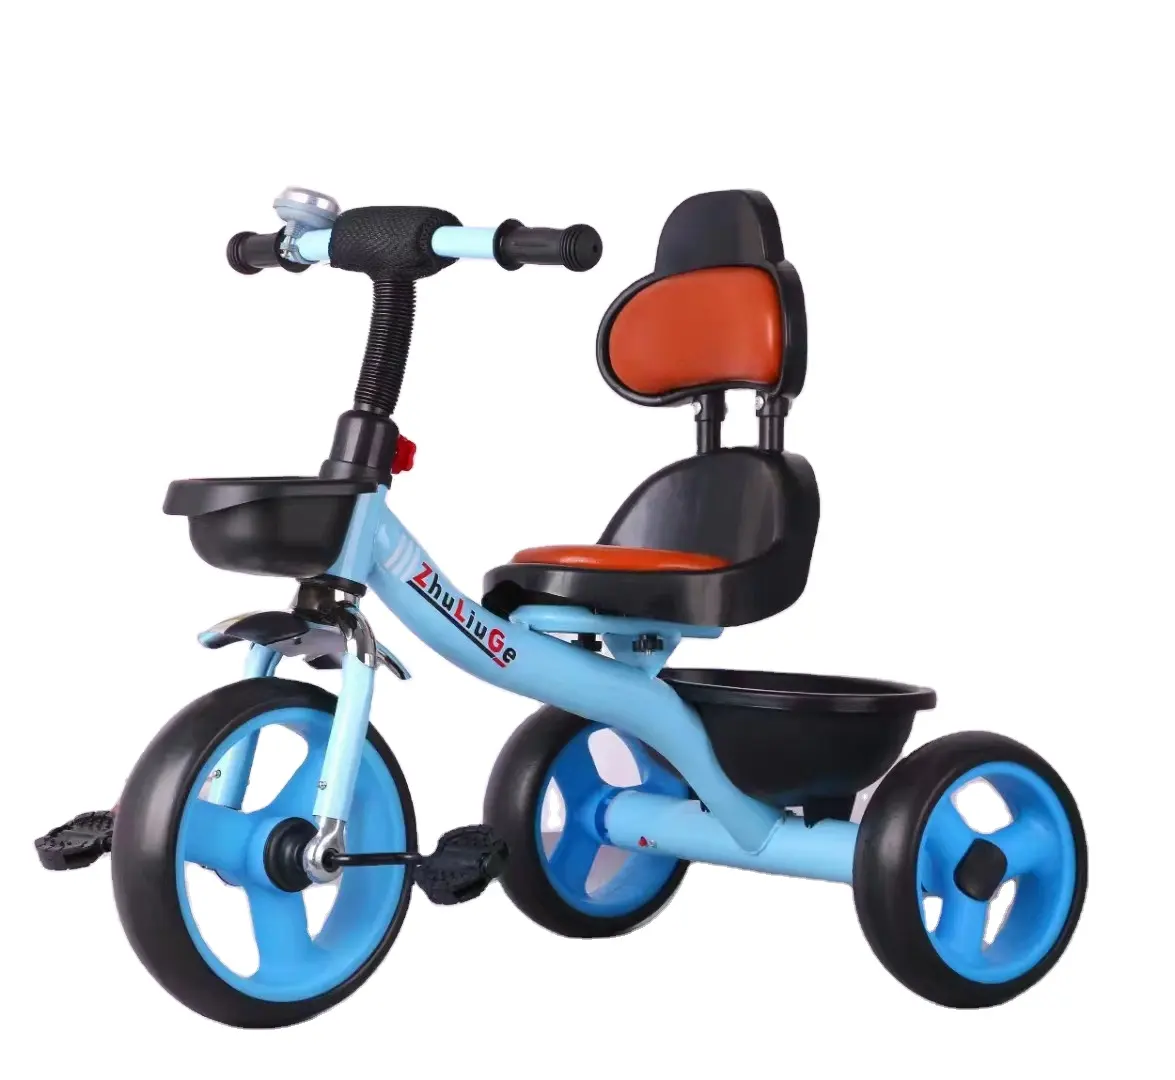 Atacado de alta qualidade crianças triciclo bicicleta/crianças triciclo 3 rodas/bebê pedal carros para o bebê triciclo crianças